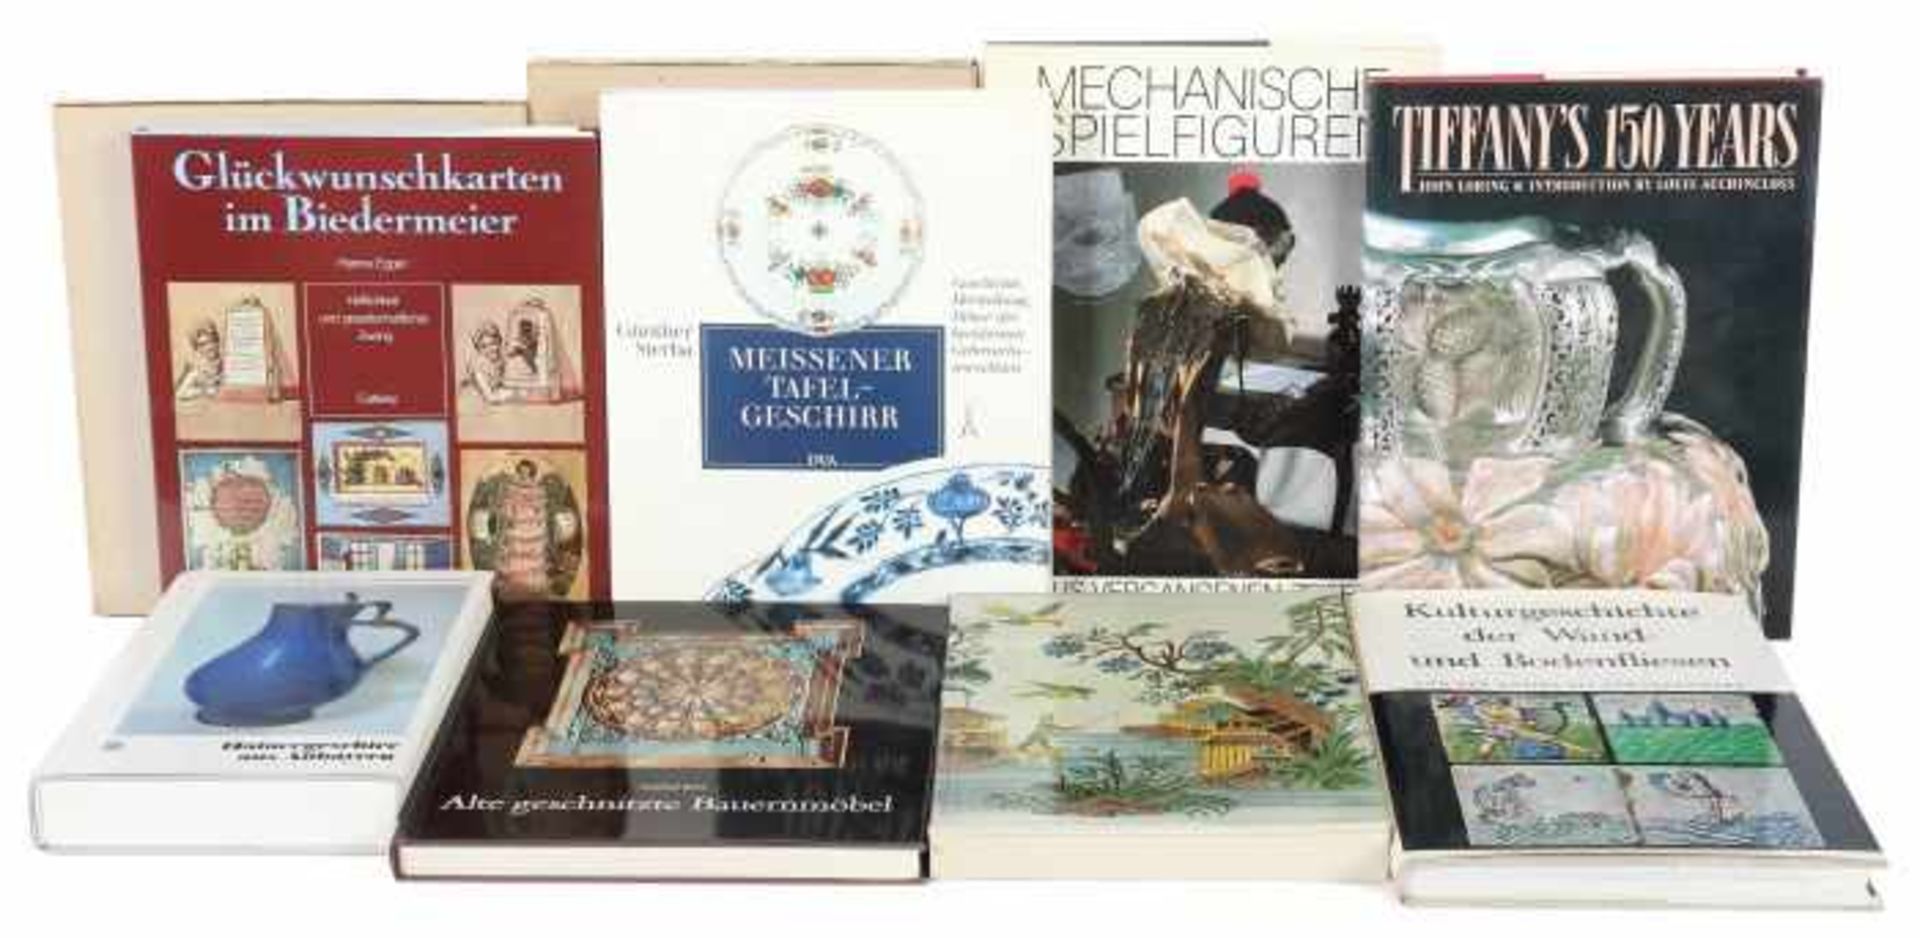 8 Bücher AntiquitätenBauer (bearb.), Hafnergeschirr aus Bayern, Kunstverlag, 1980; Durlacher